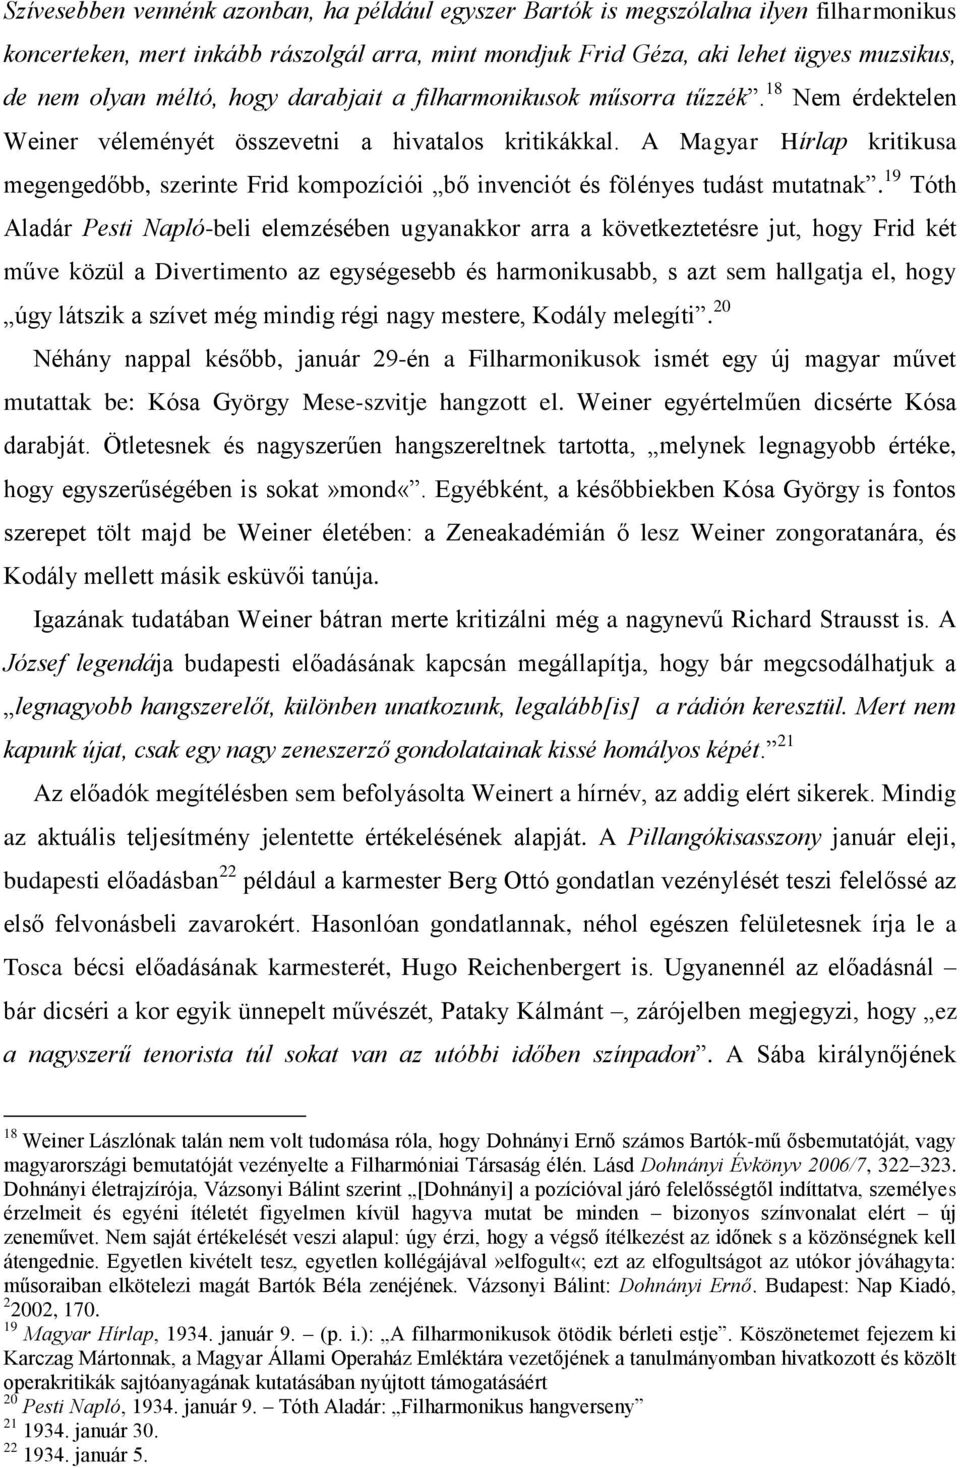 A Magyar Hírlap kritikusa megengedőbb, szerinte Frid kompozíciói bő invenciót és fölényes tudást mutatnak.